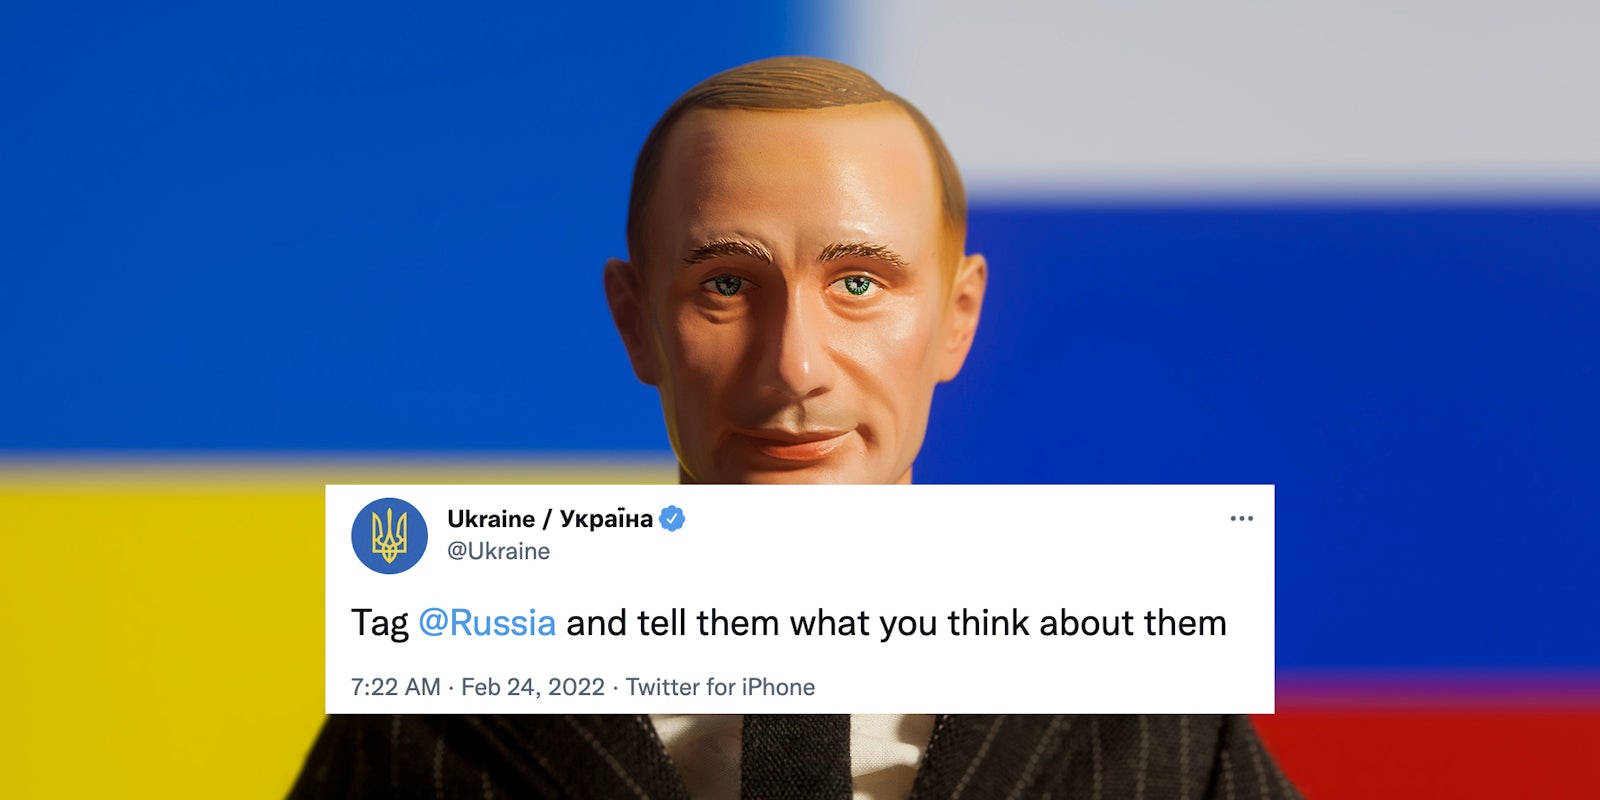 A Putin puppet.